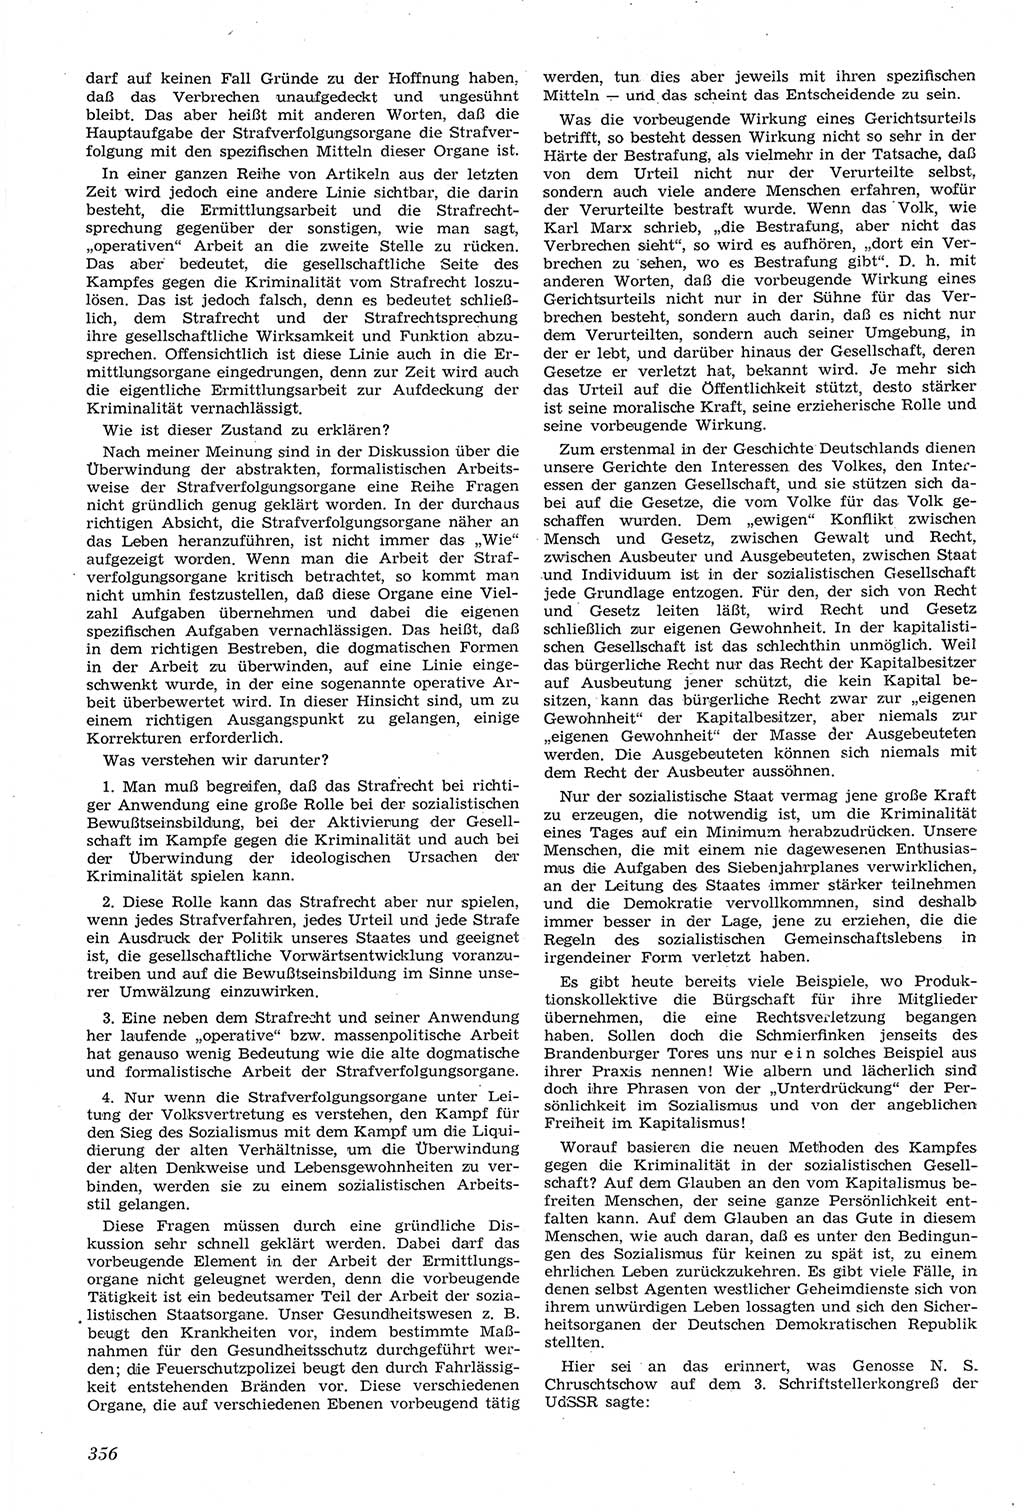 Neue Justiz (NJ), Zeitschrift für Recht und Rechtswissenschaft [Deutsche Demokratische Republik (DDR)], 14. Jahrgang 1960, Seite 356 (NJ DDR 1960, S. 356)